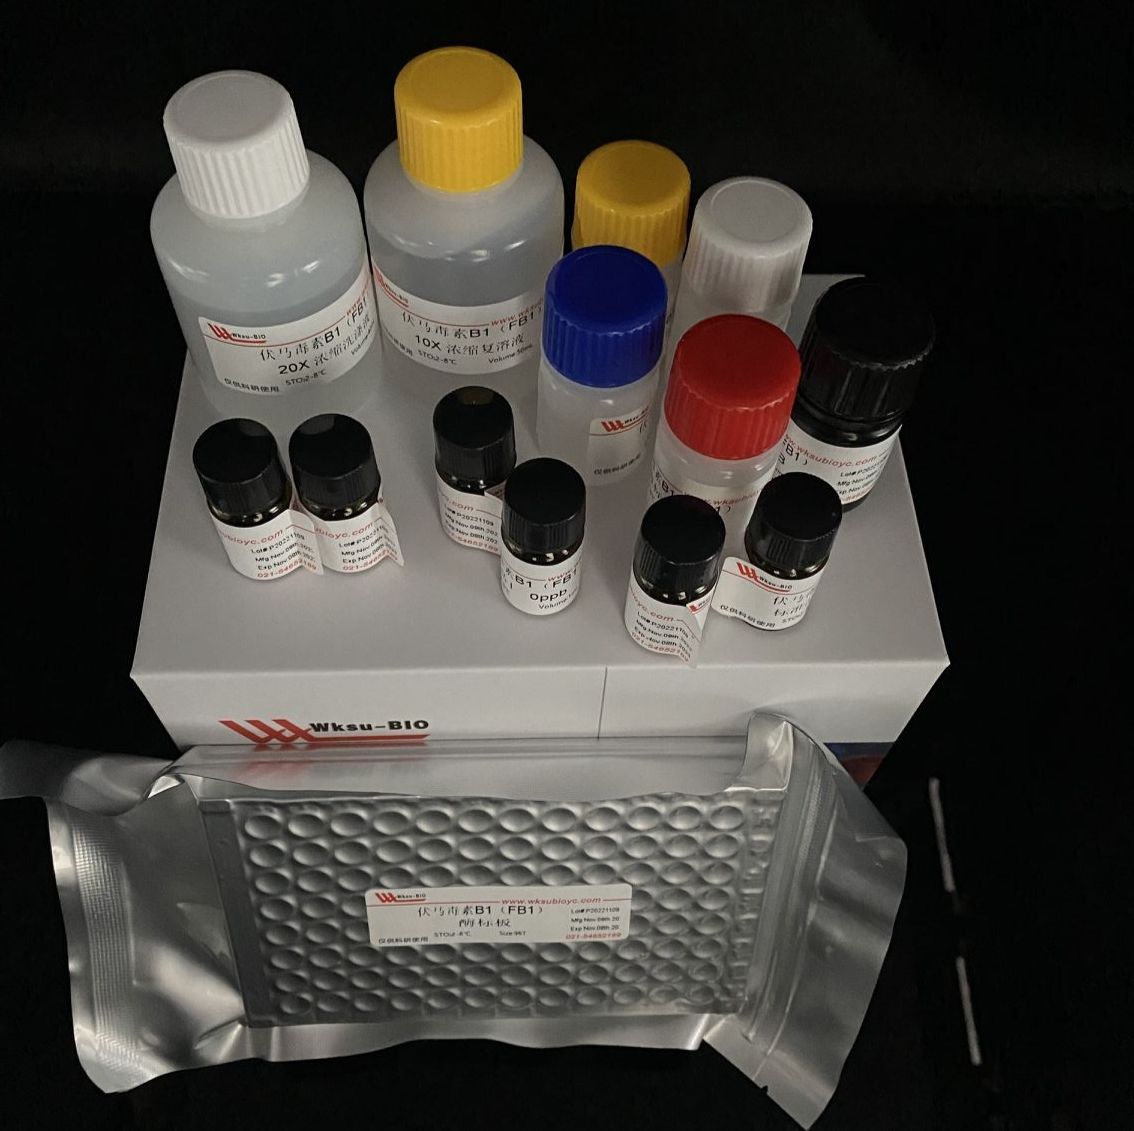 土壤荧光素二乙酸酯(FDA)水解酶试剂盒,微板法